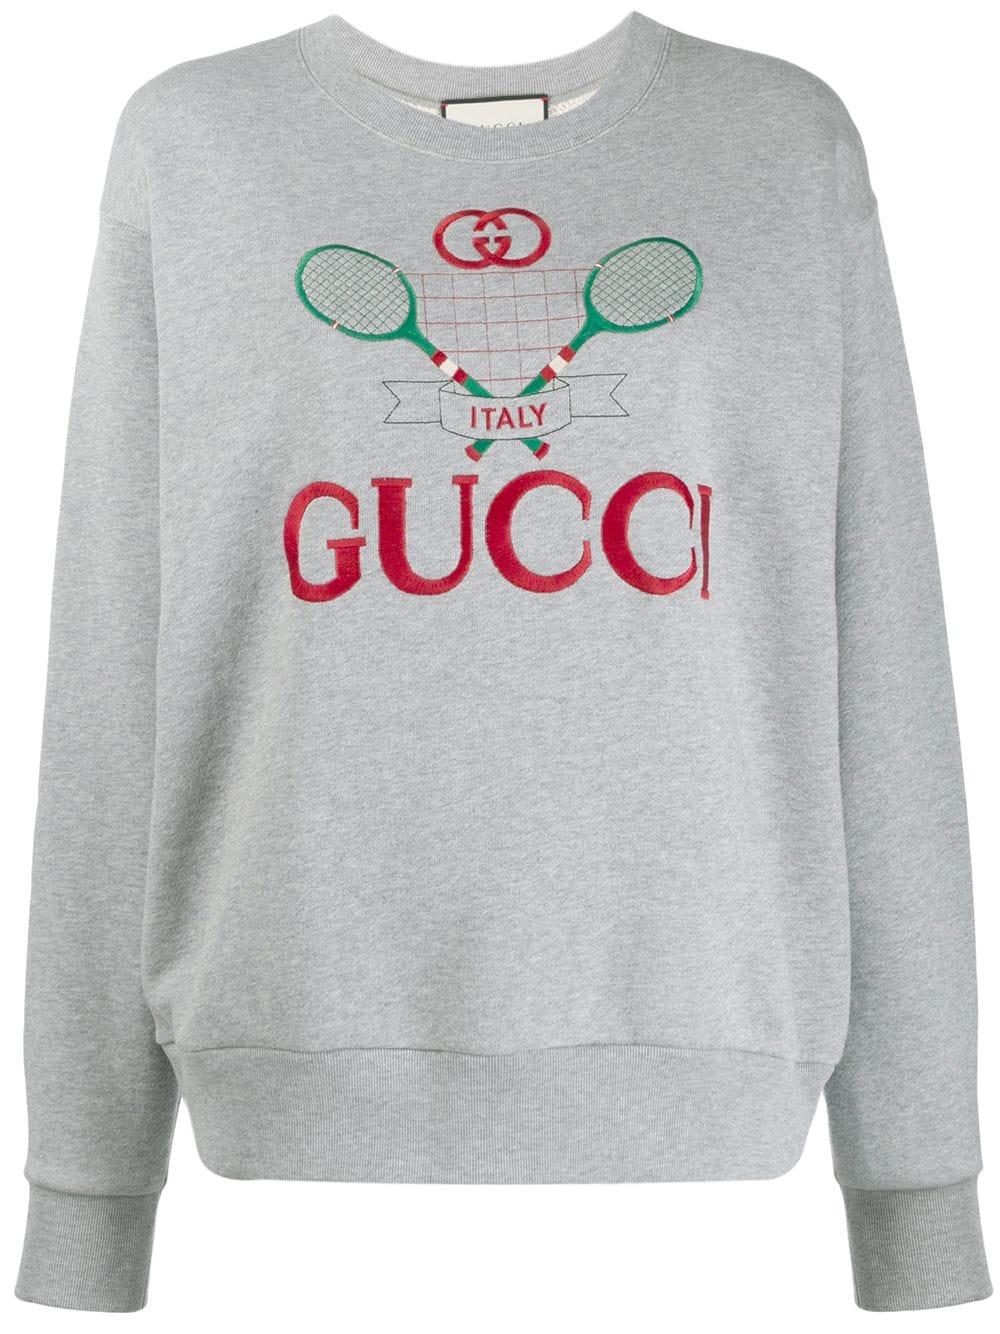 Gucci Sweatshirt With Gucci Tennis - Farfetch